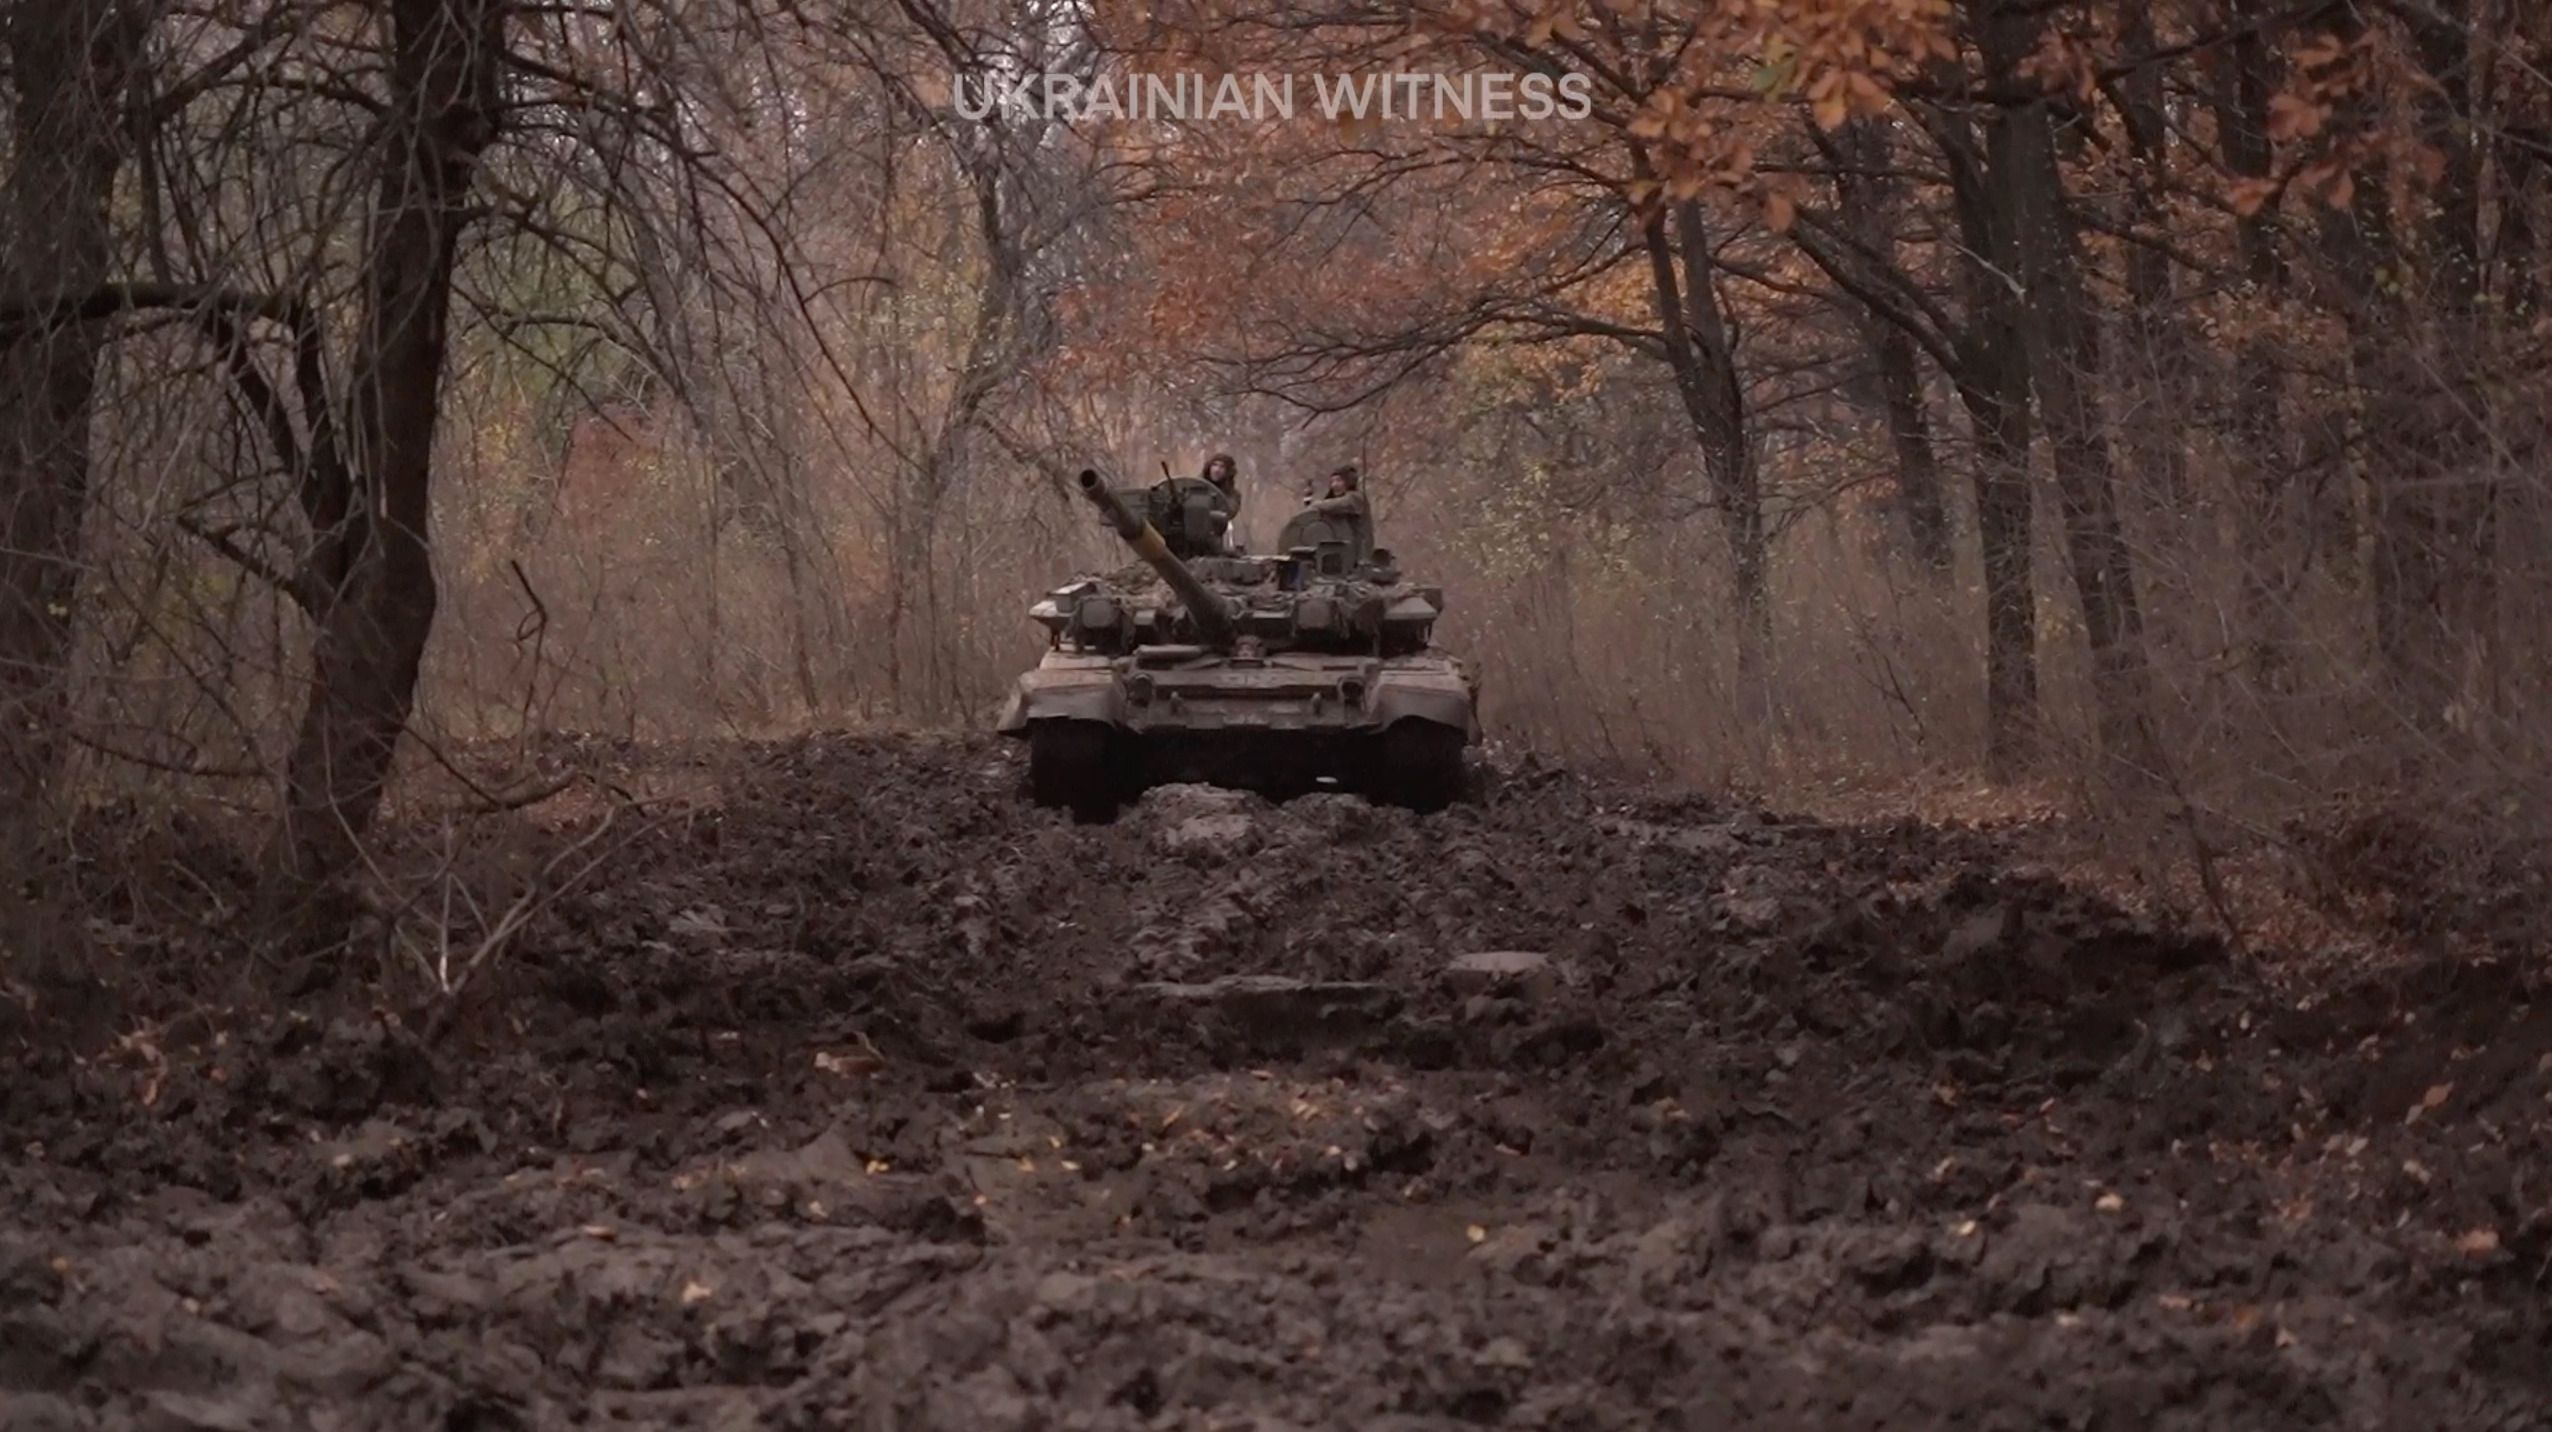 Как тврофейный танк Т-90 работает против россиян